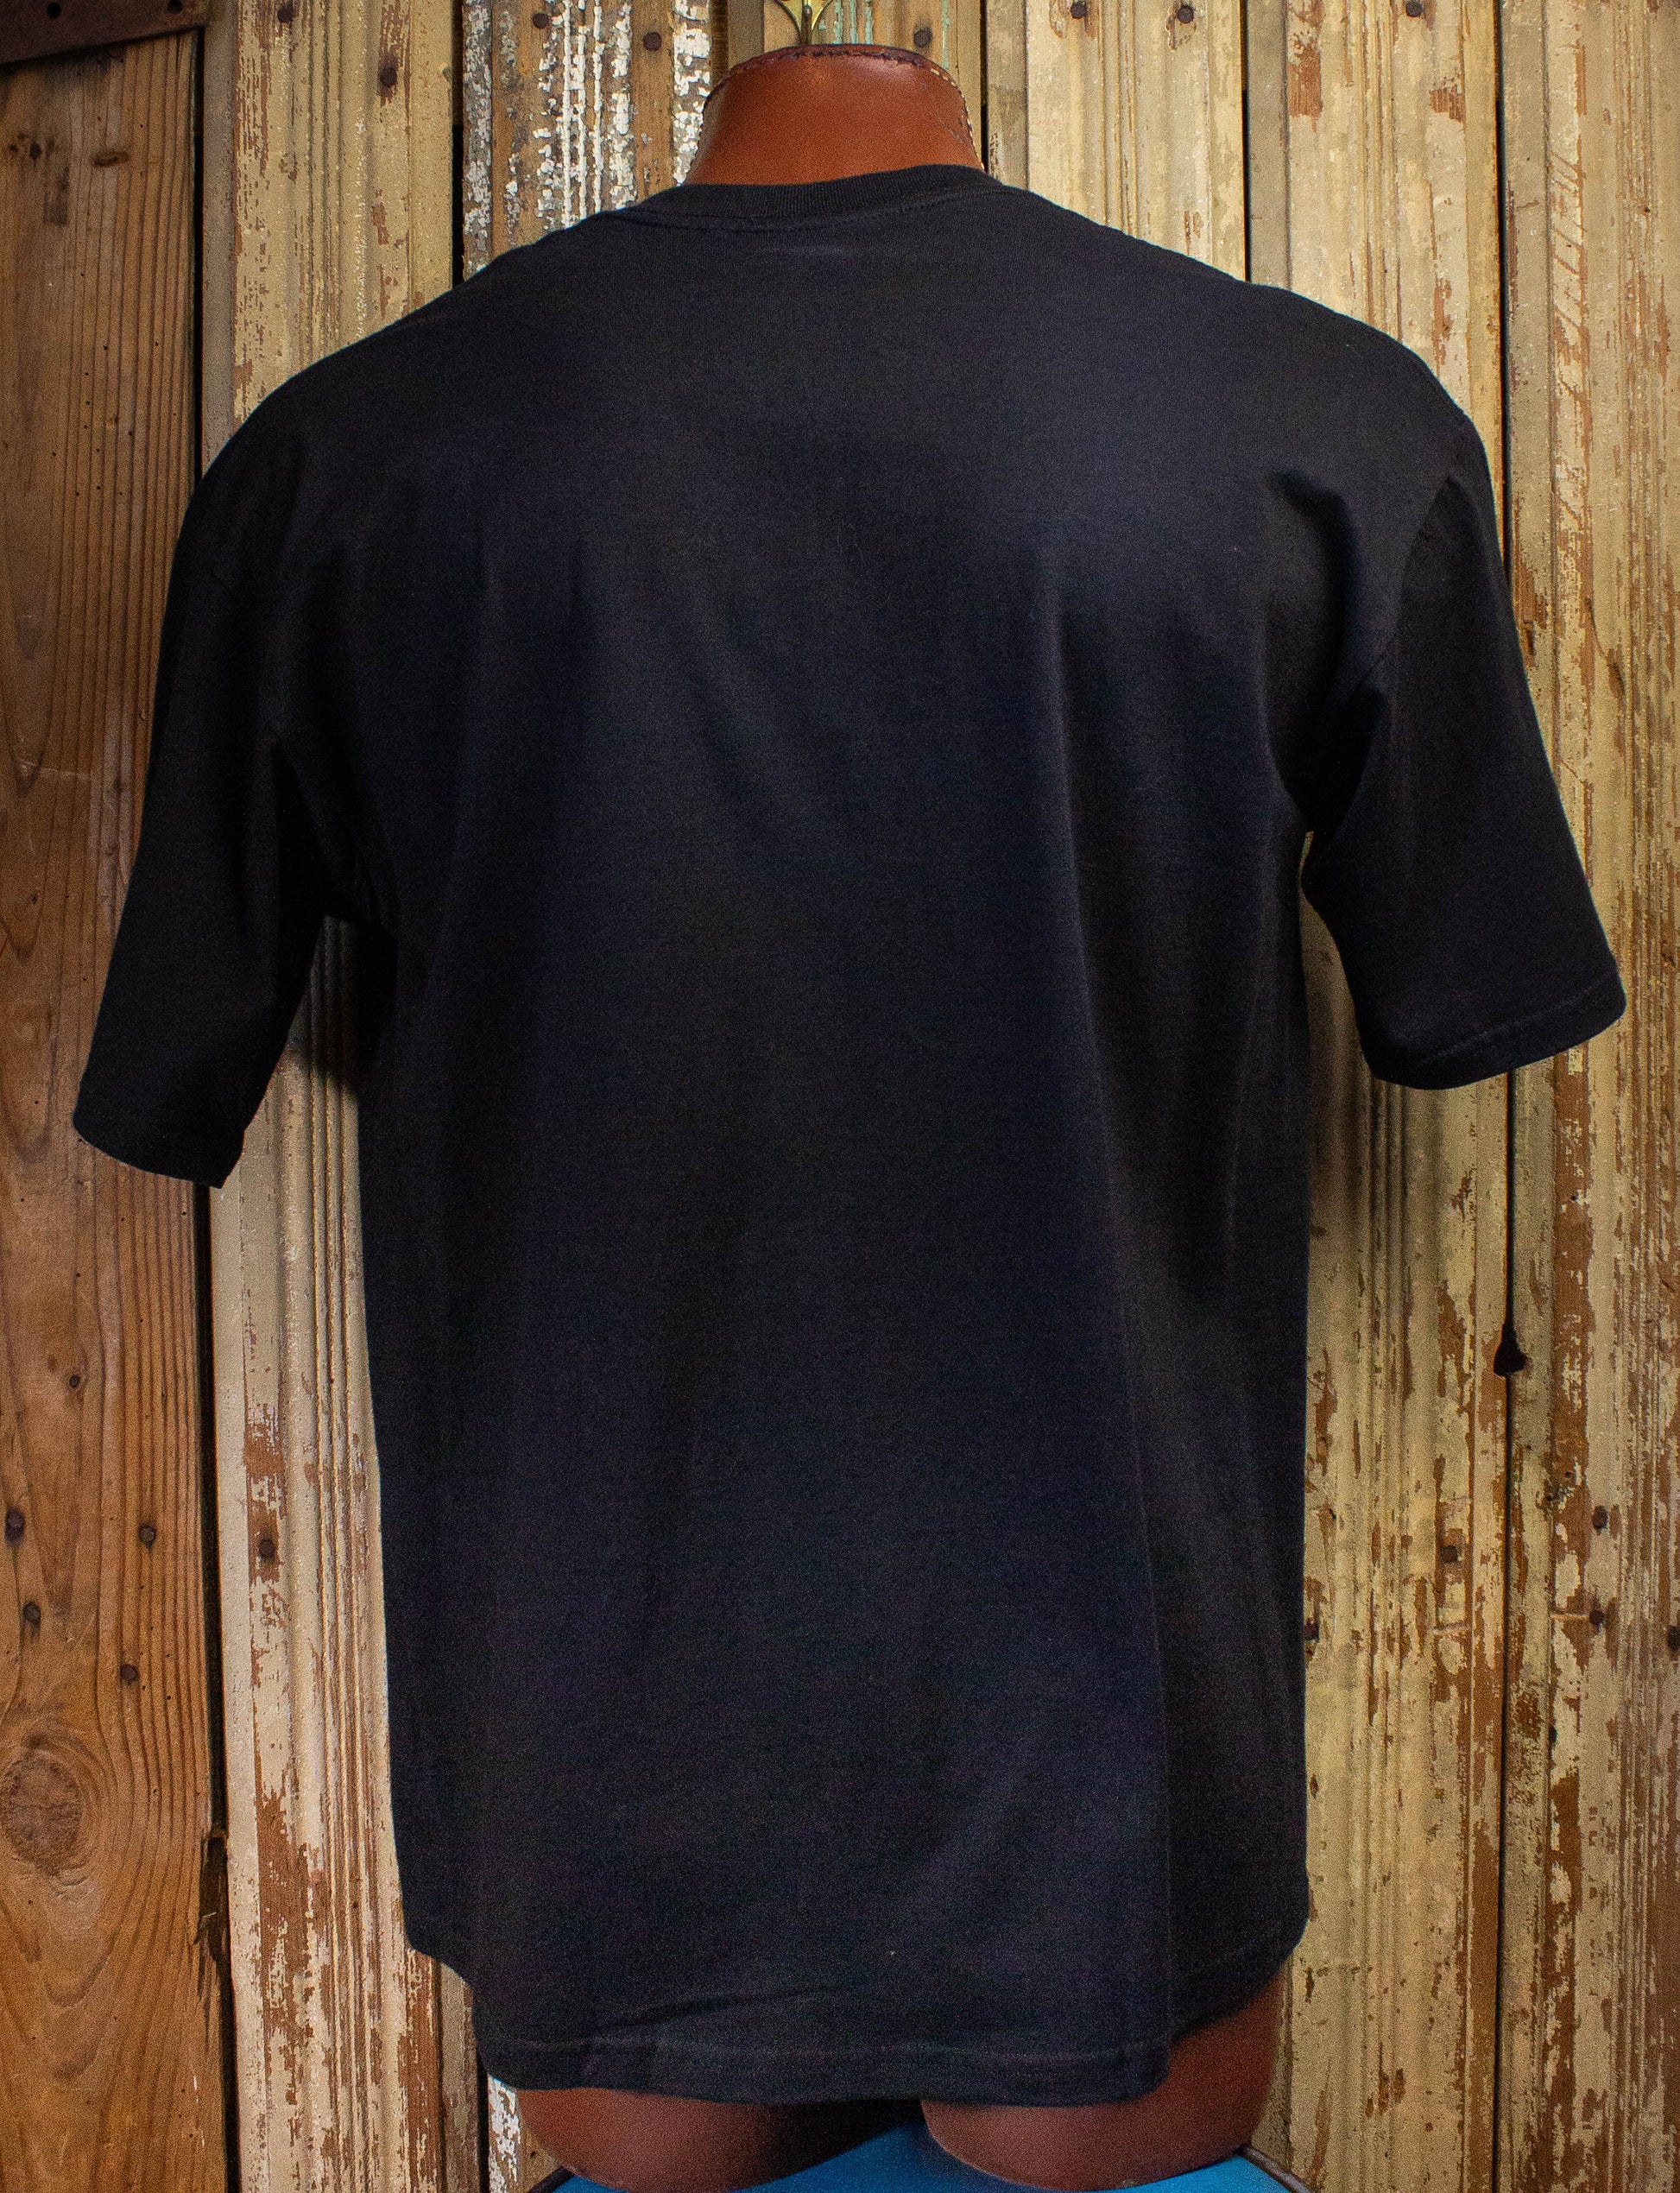 Vintage XFL Memphis Maniax Graphic T Shirt 2001 Black XL